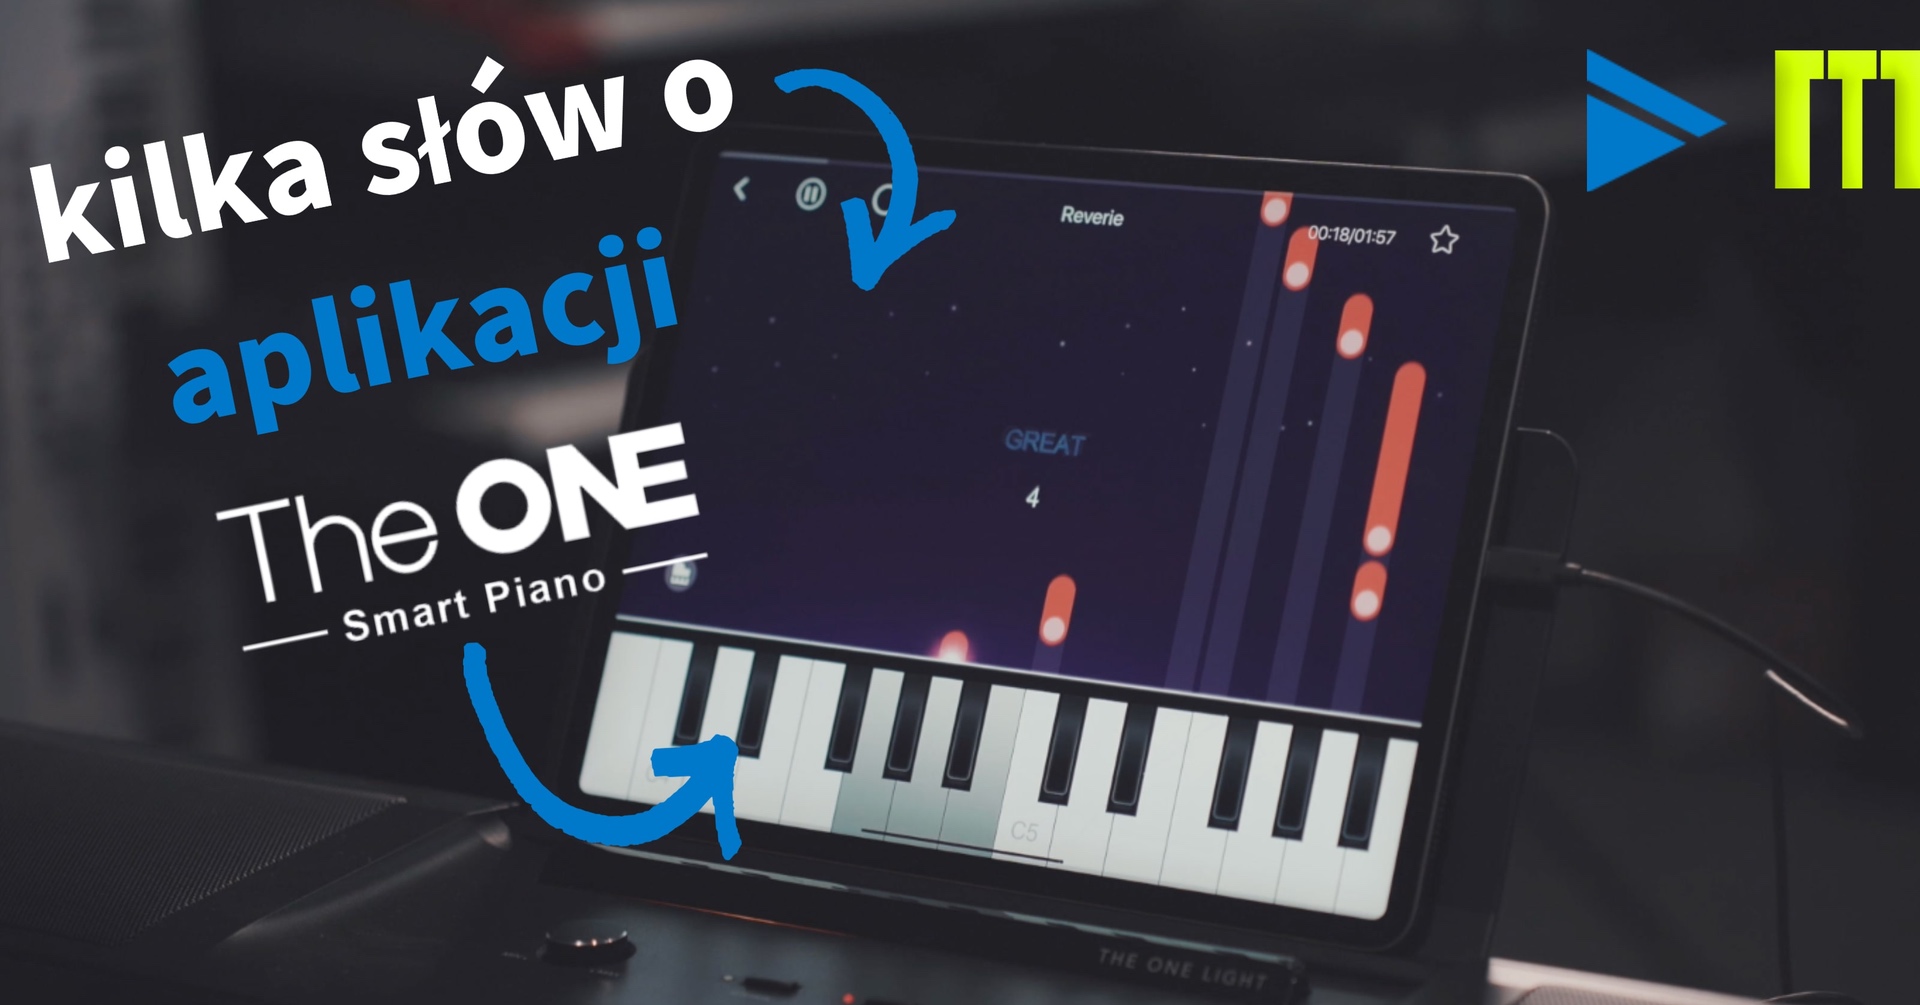 Muzykuj.com ocenia aplikację The ONE Smart Piano!